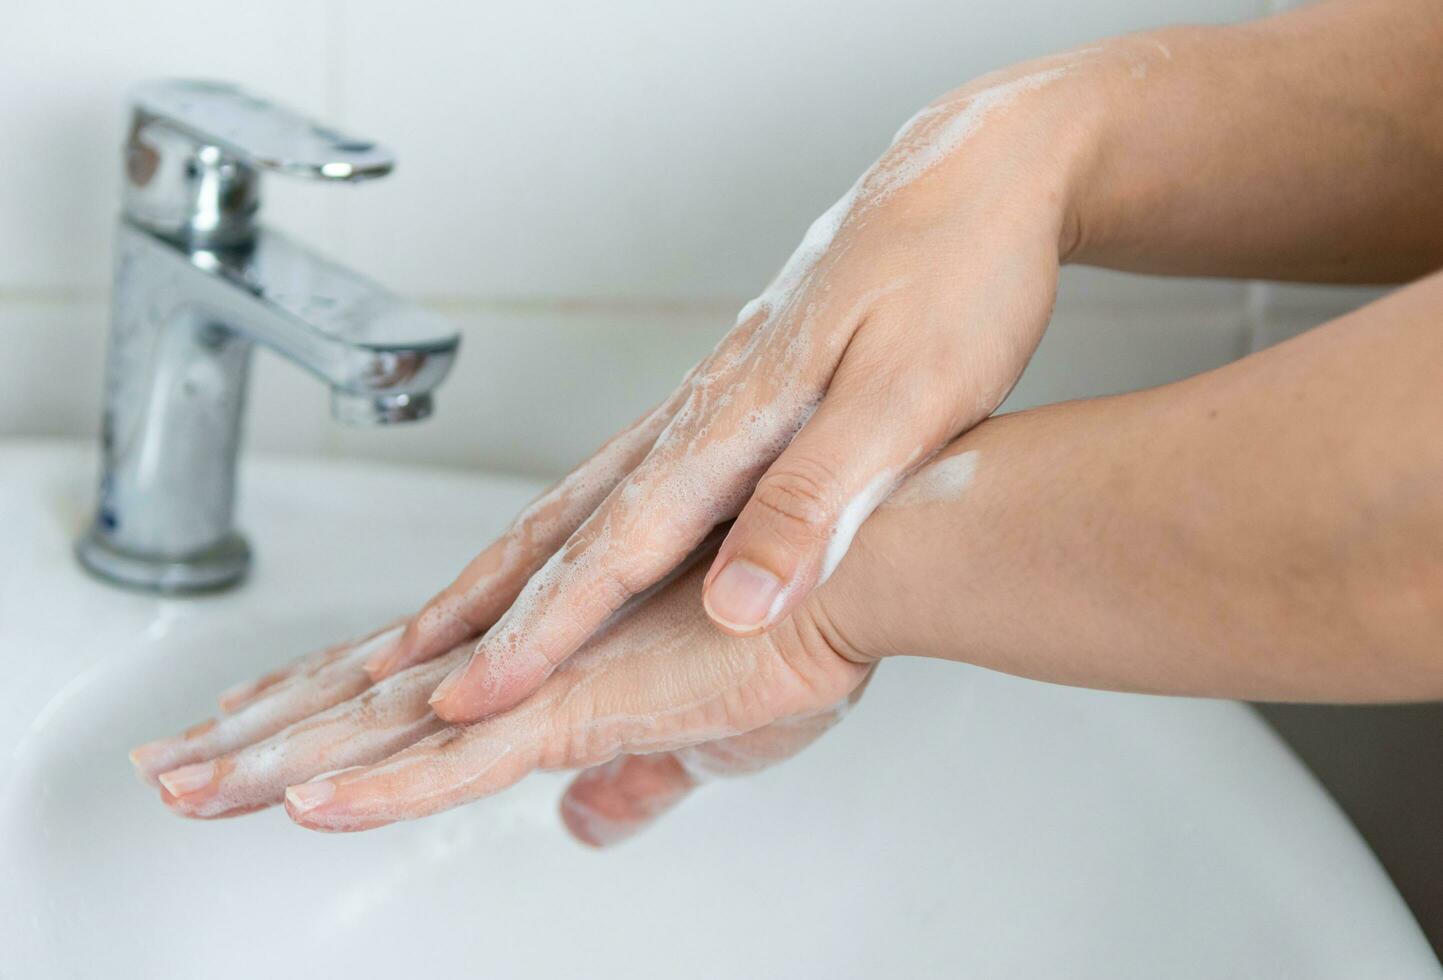 adultos lavar su manos con mano jabón a evitar infección y virus foto